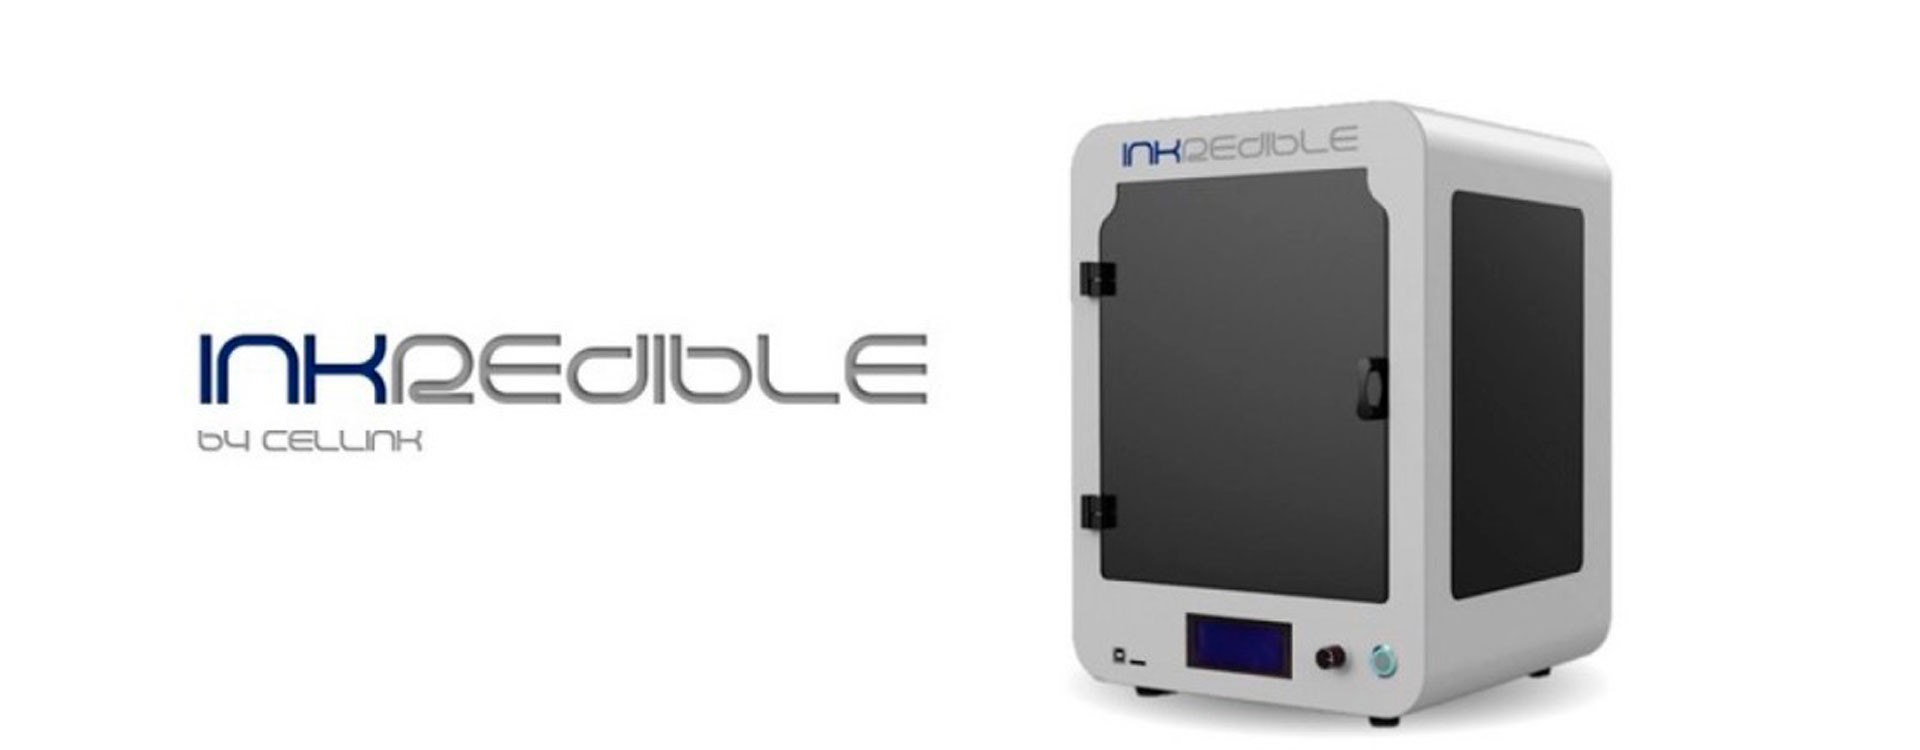 INKREDIBLE - найбільш економічно ефективний настільний 3D біопринтер.